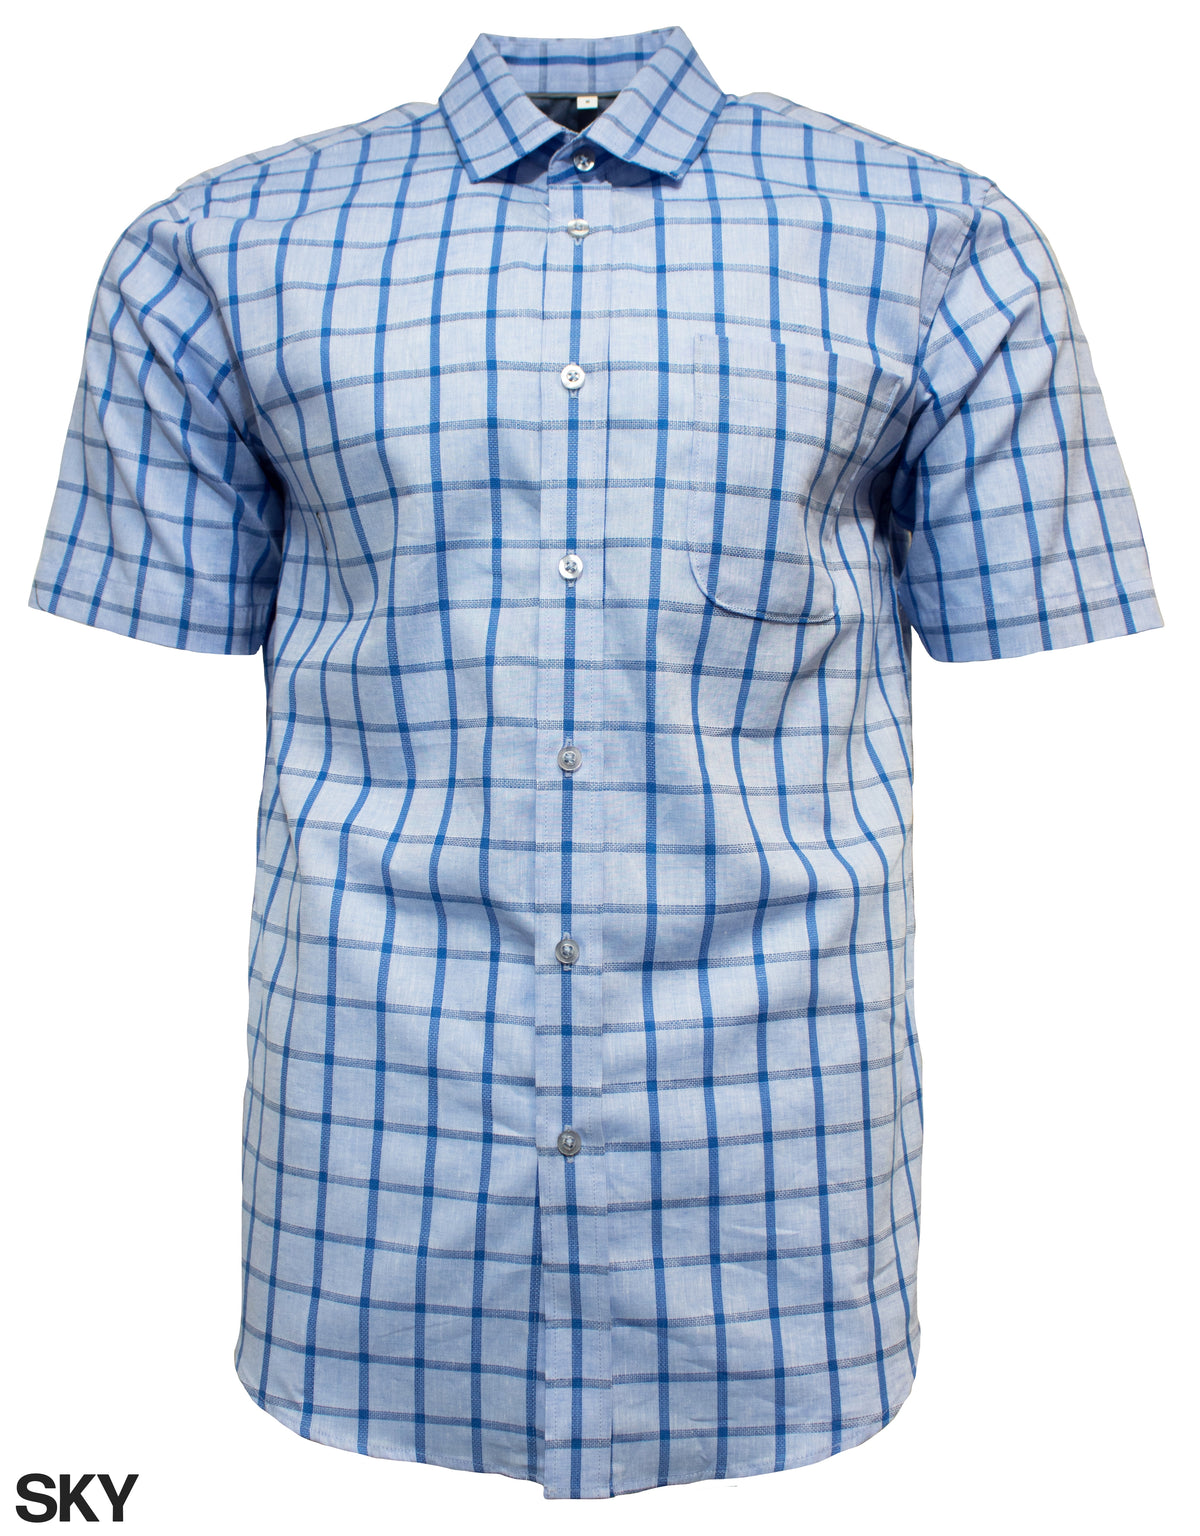 Perrone Lino Shirt - Mainstreet Clothing